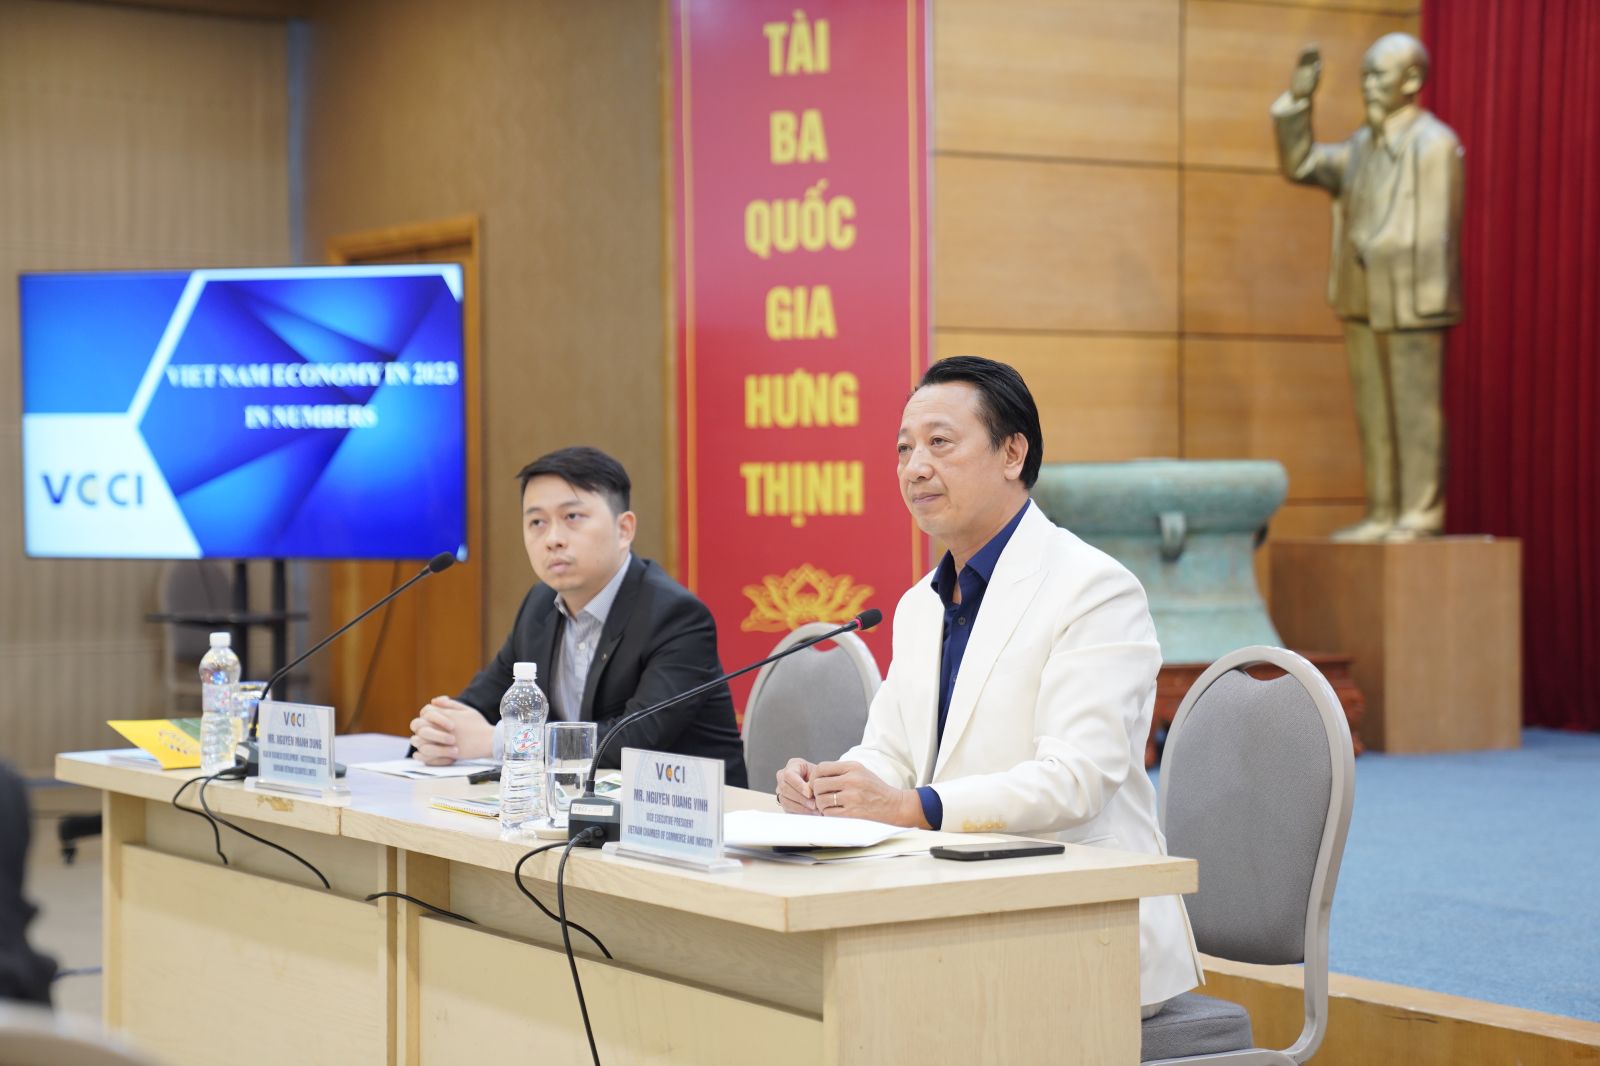 Phó Chủ tịch VCCI Nguyễn Quang Vinh đã có buổi trao đổi với nhiều quỹ đầu tư hàng đầu châu Á và thế giới về triển vọng kinh tế Việt Nam